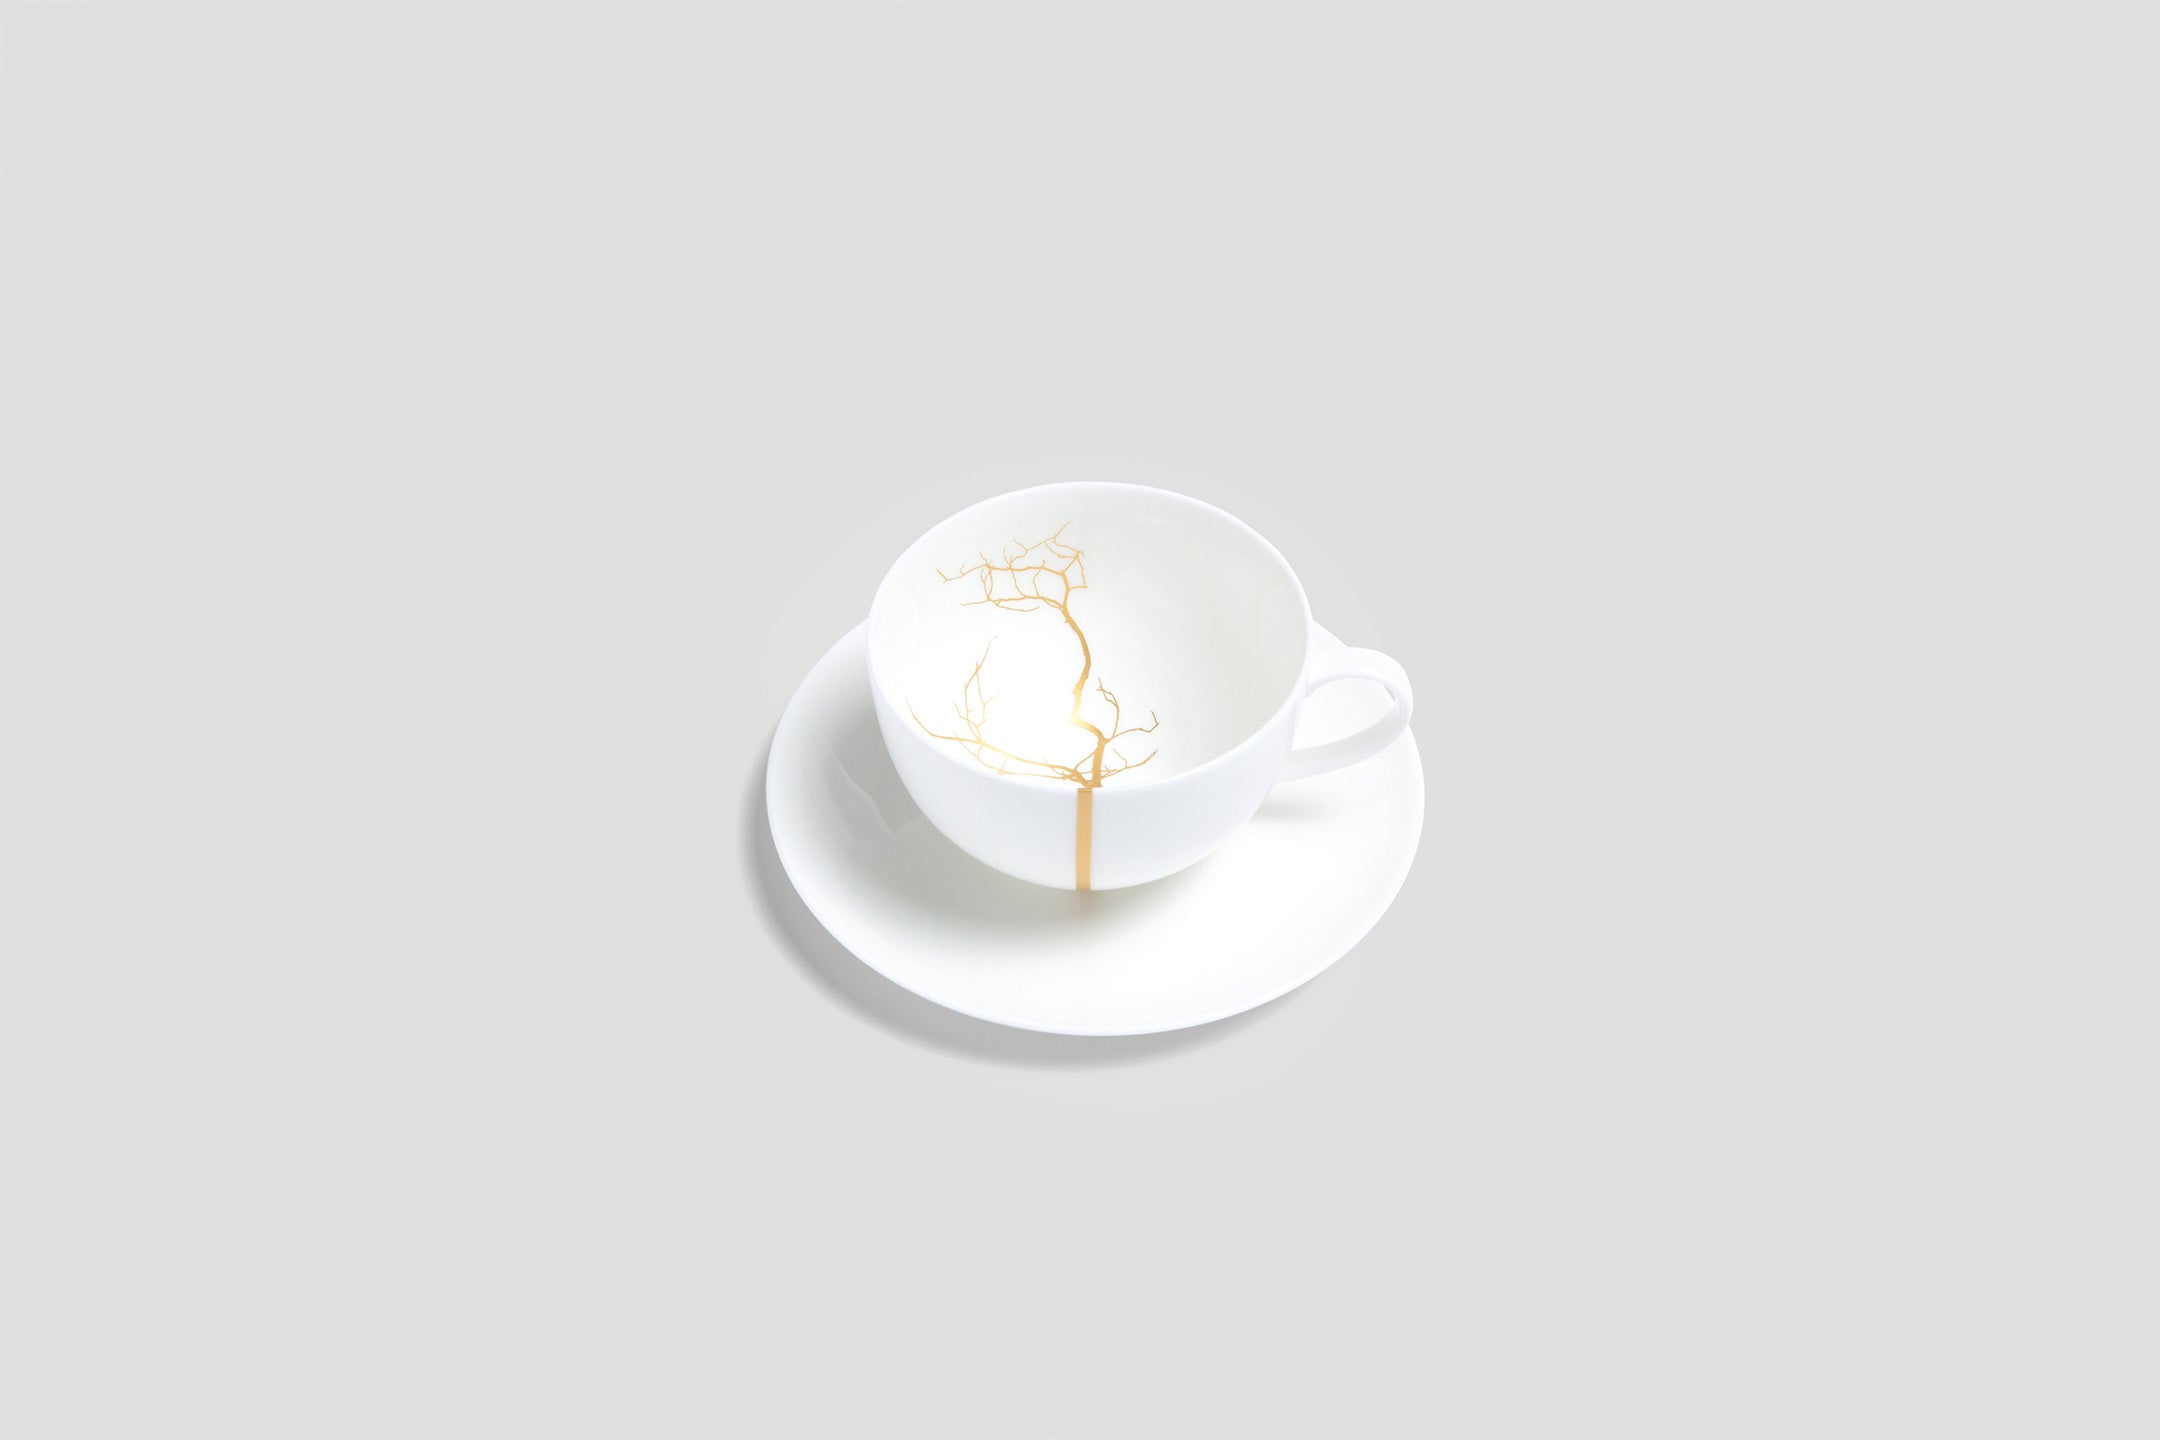 Designer-Luxury-Modern-Dibbern Golden Forest Teacup & Saucer-Dibbern-Golden Forest-Gold-Bodo Sperlein-Bone China-Designer-Luxury-Modern-Tasse-Becher-Kaffee Tasse